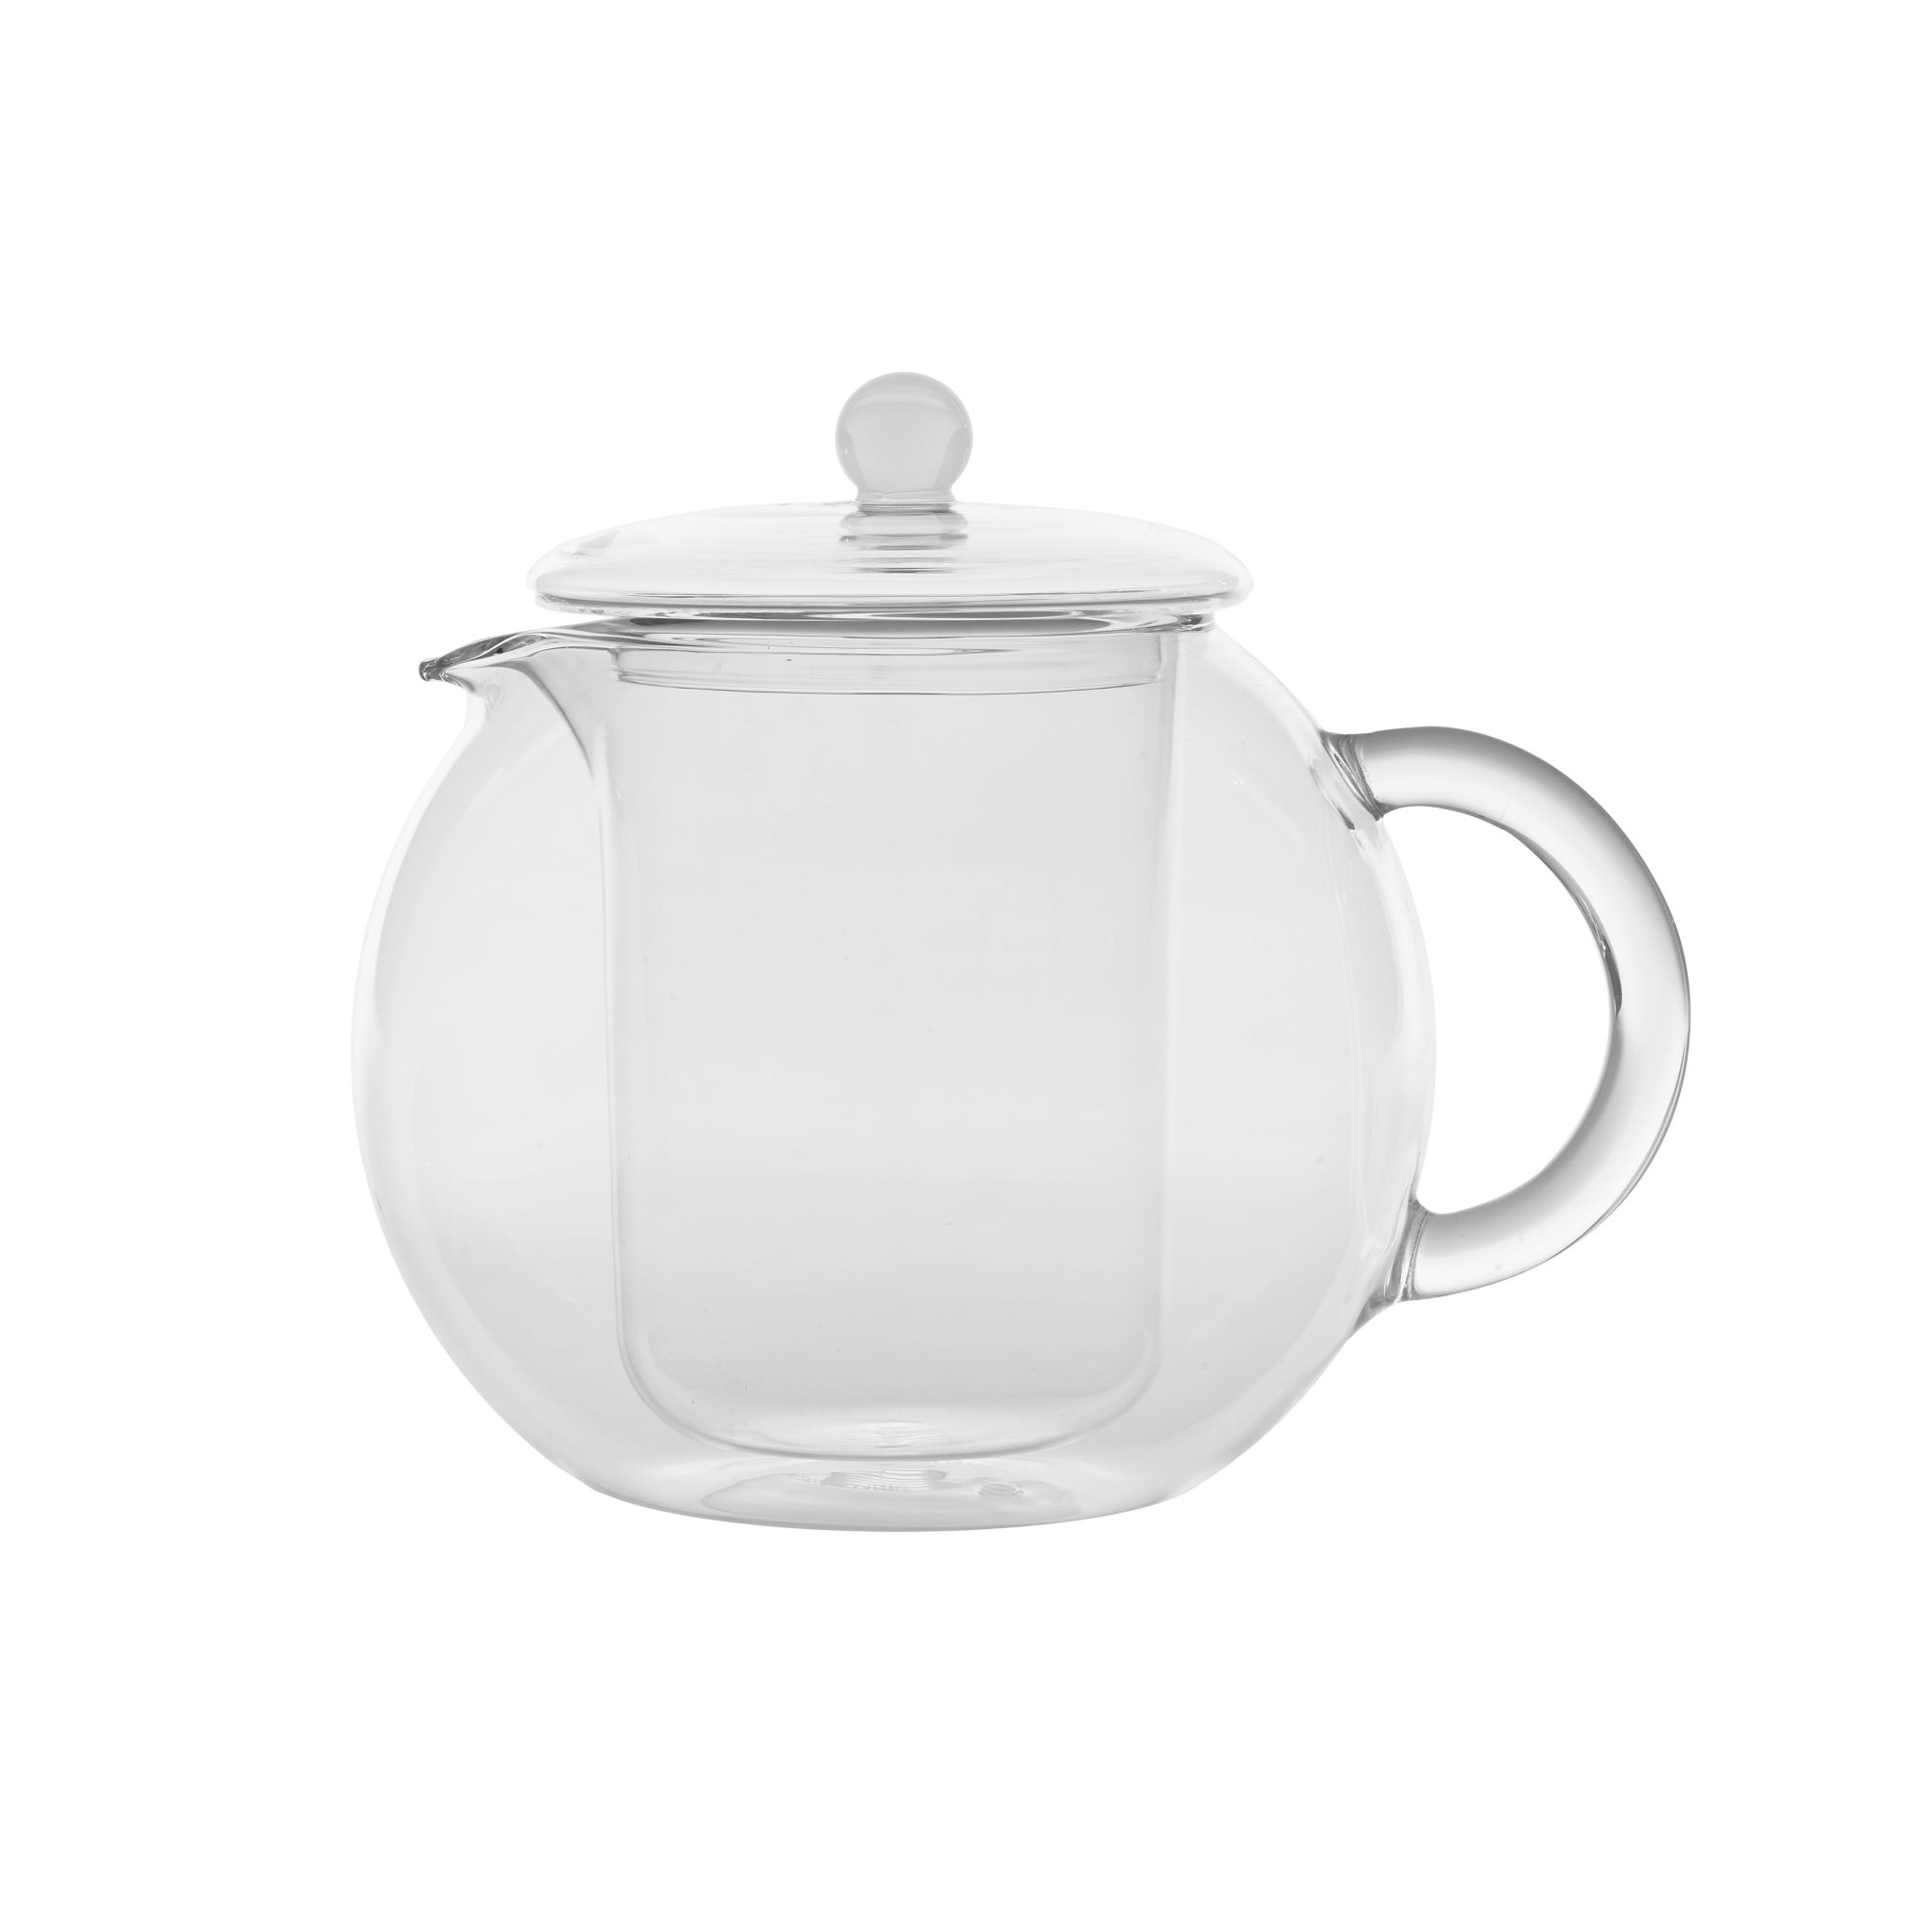 BILIA teapot